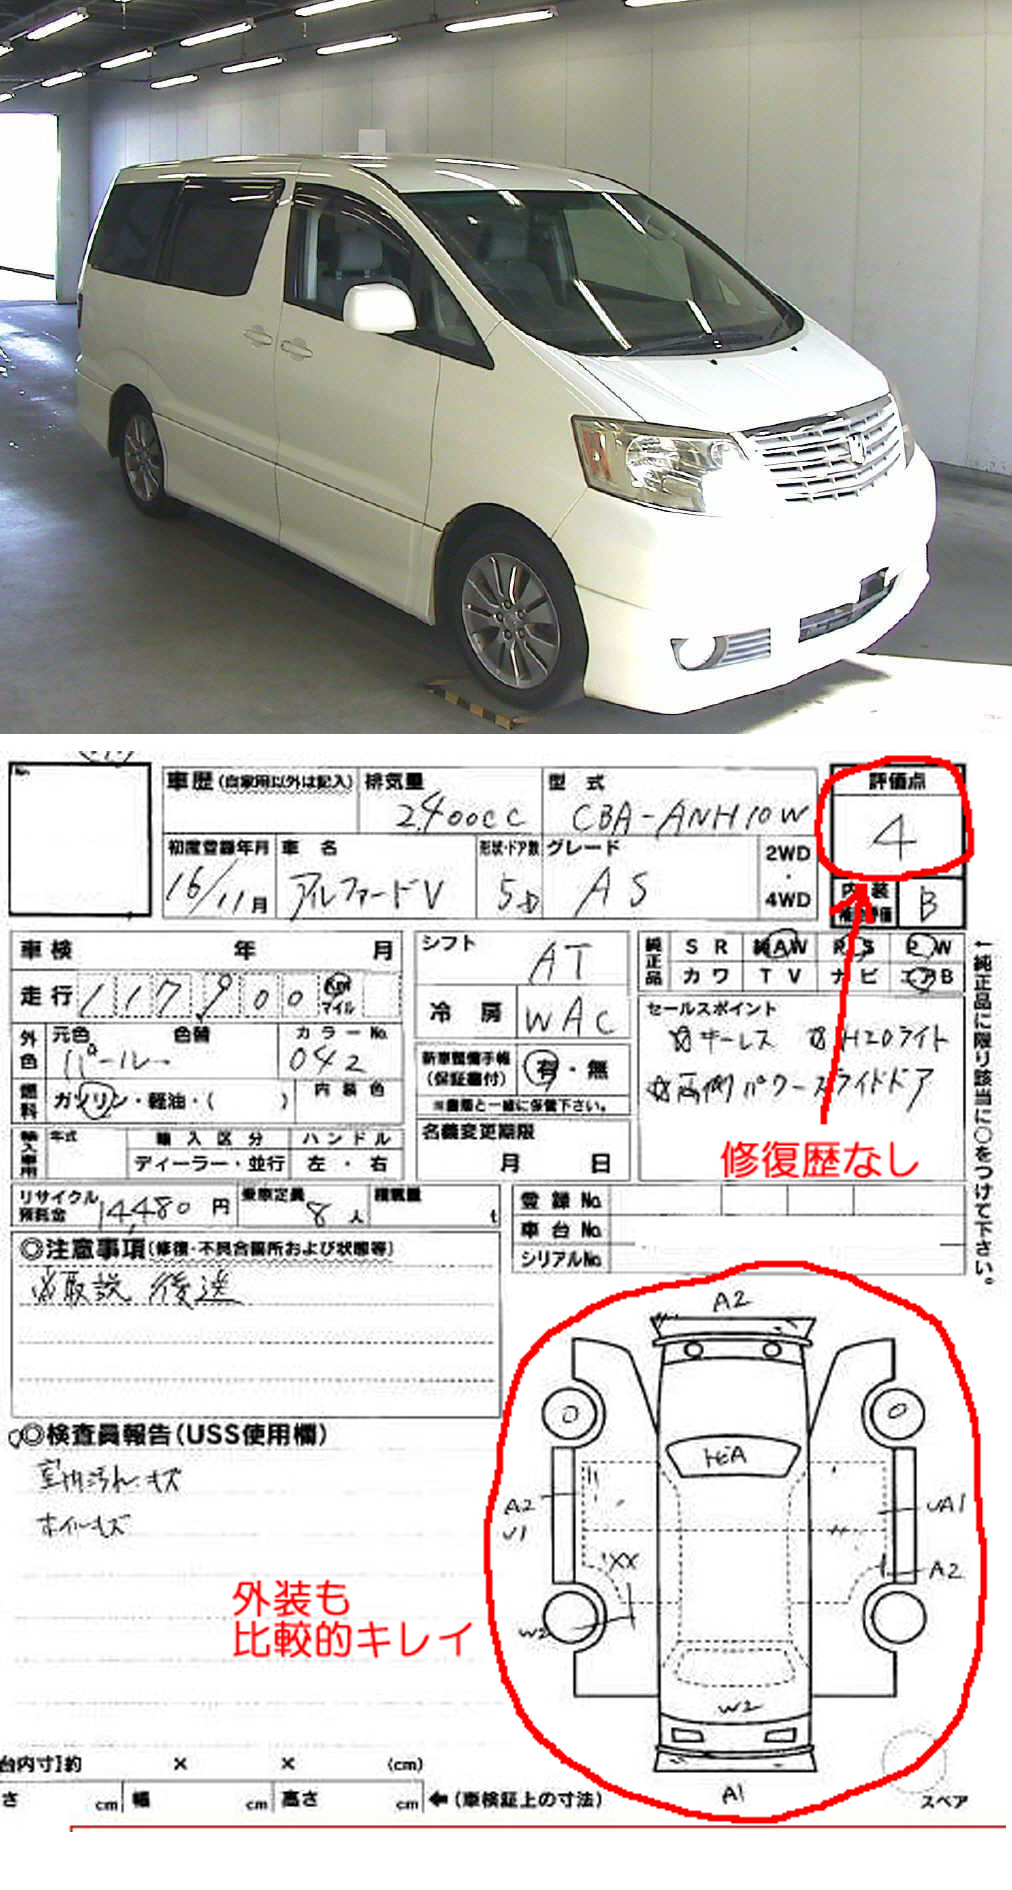 アルファードの中古車価格のからくりとは 埼玉にある中古車屋のプロが教えるミニバン選択基準